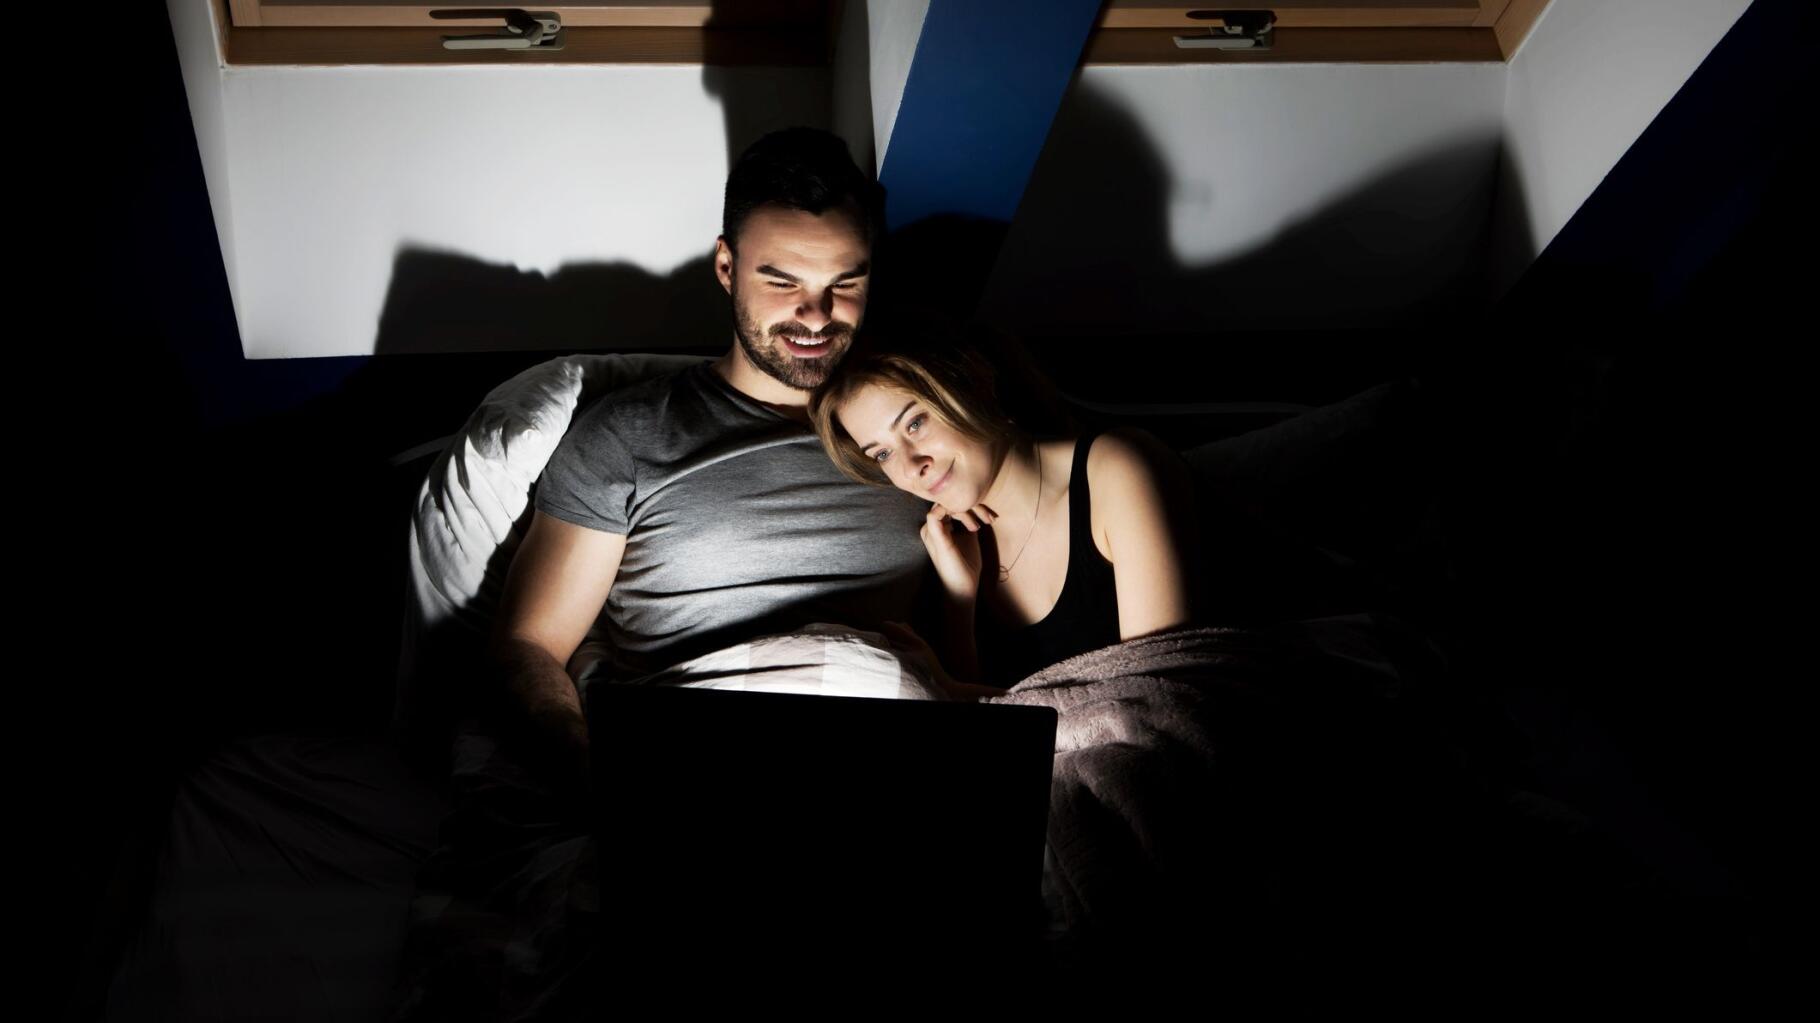 Regarder du porno en couple, une habitude qui peut ressouder une relation image photo